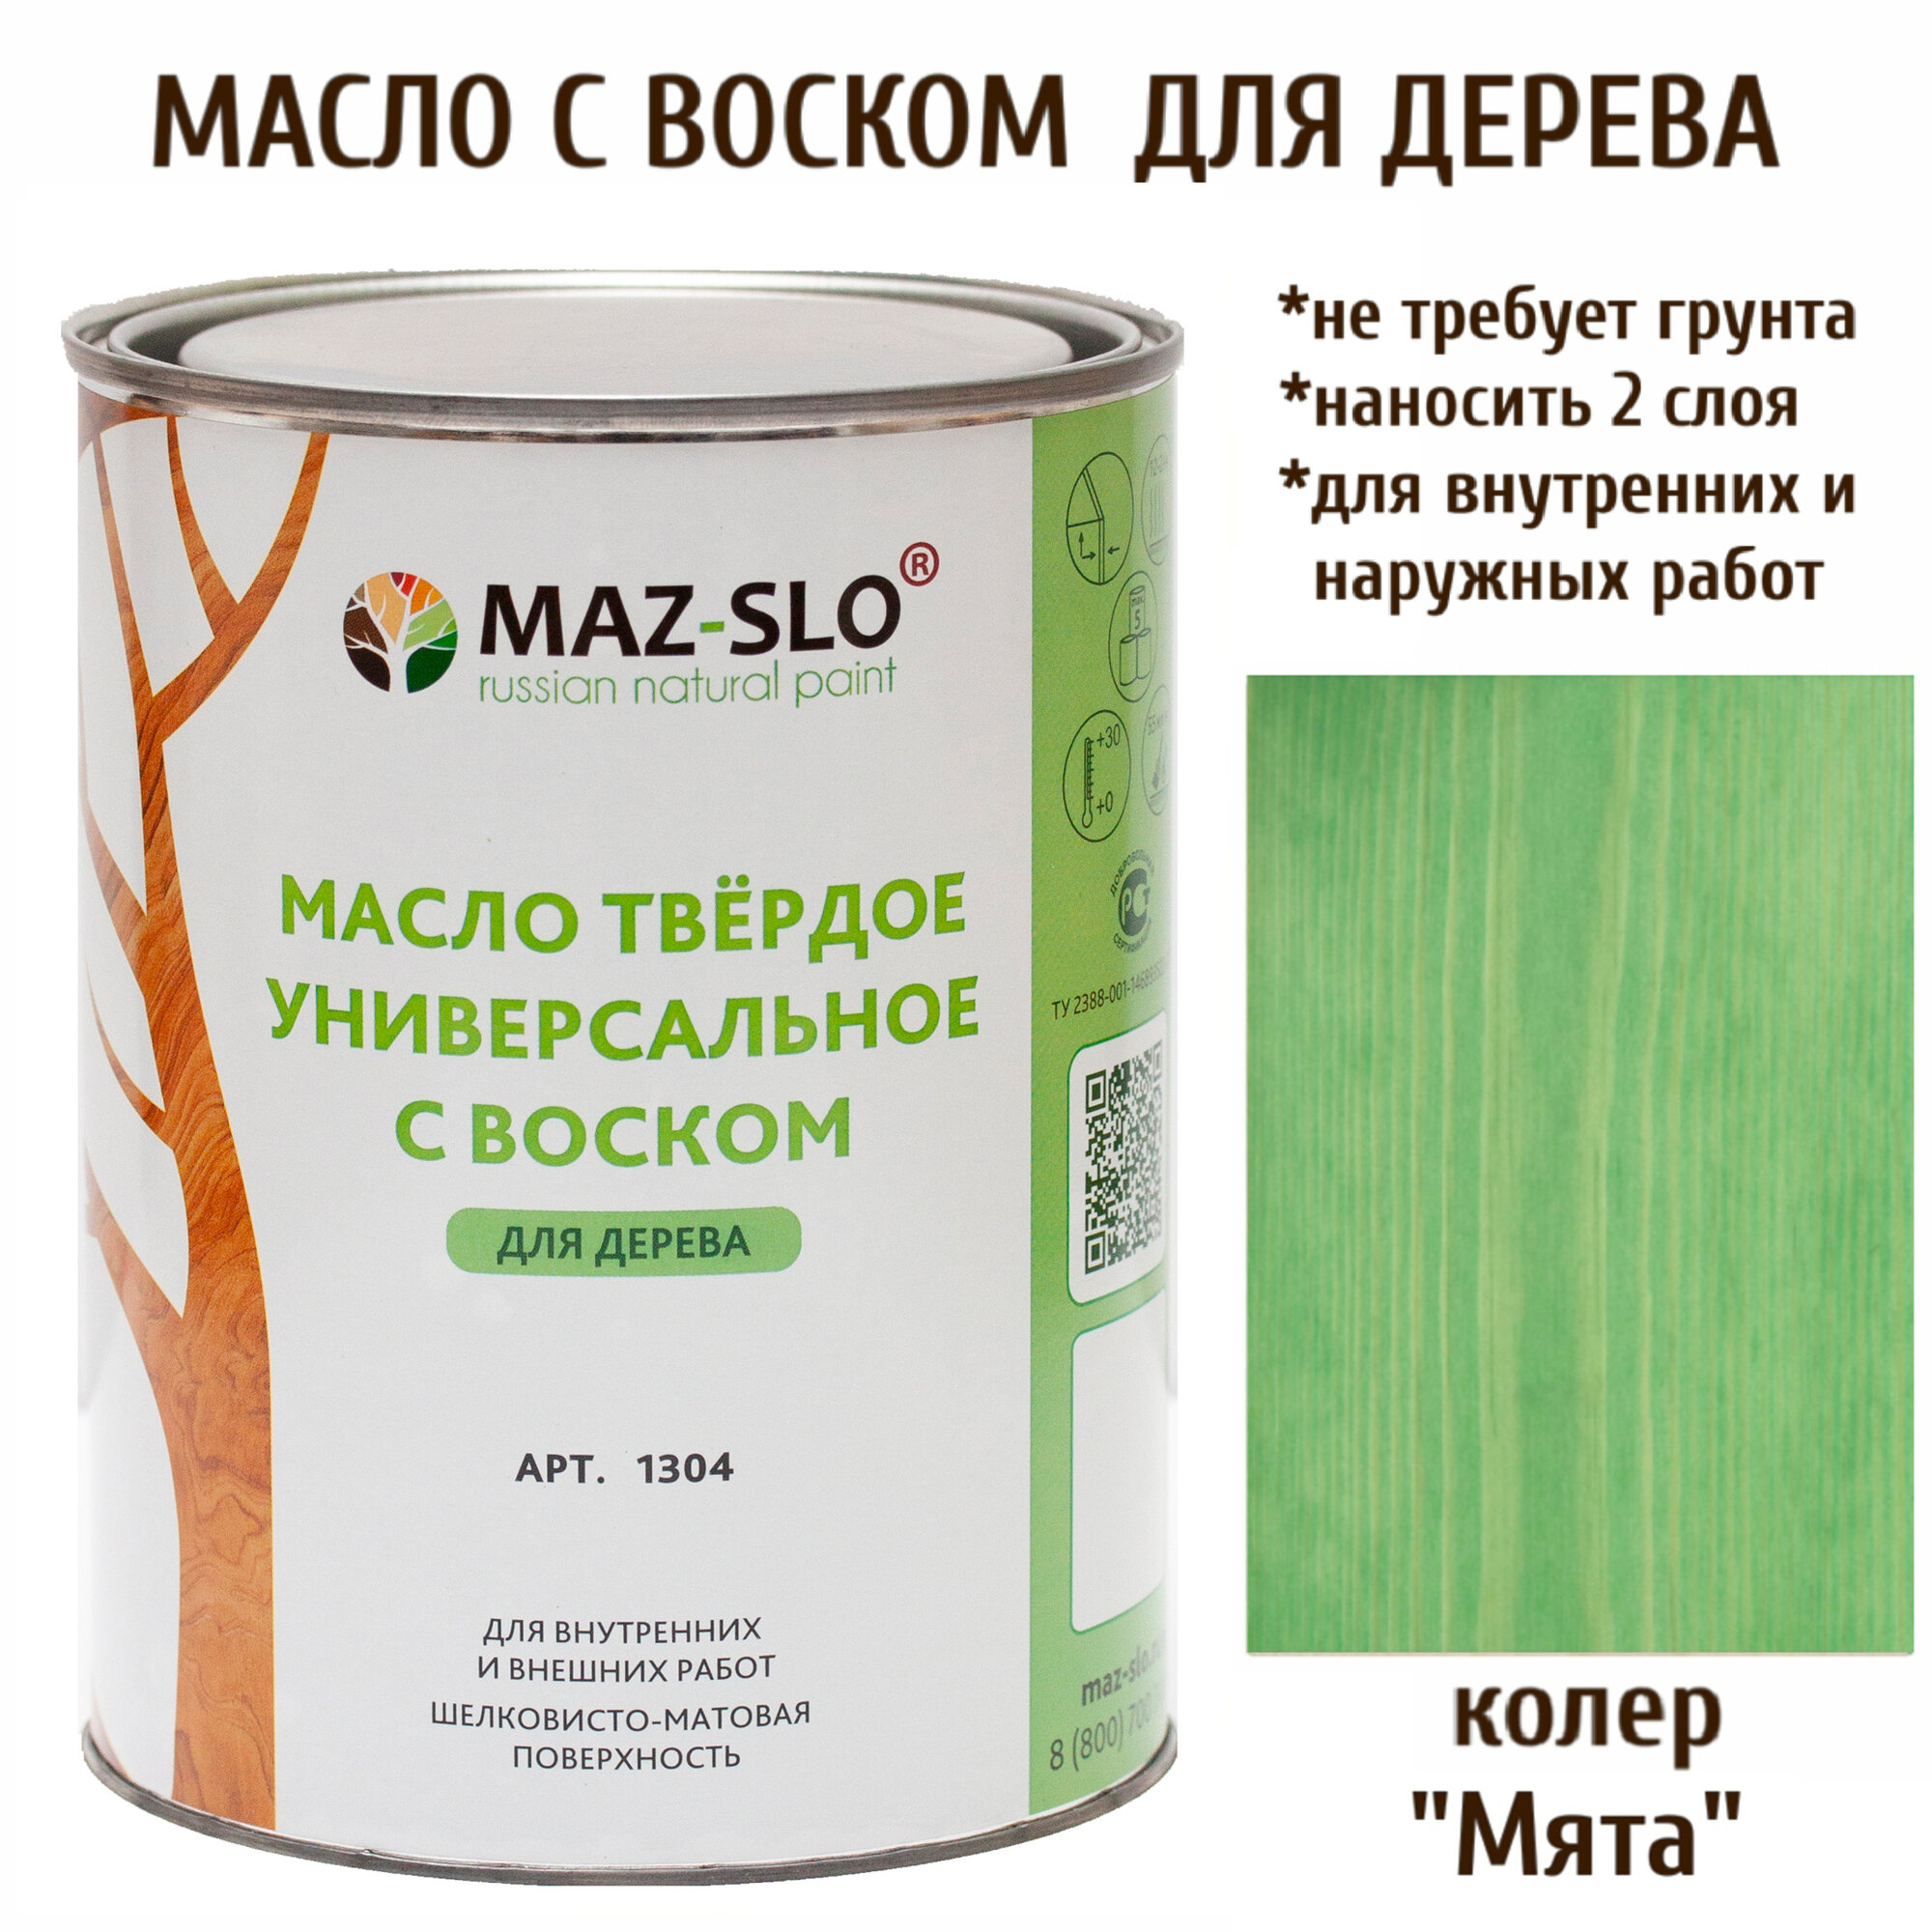 Масло твердое универсальное с воском Maz-slo цвет Мята